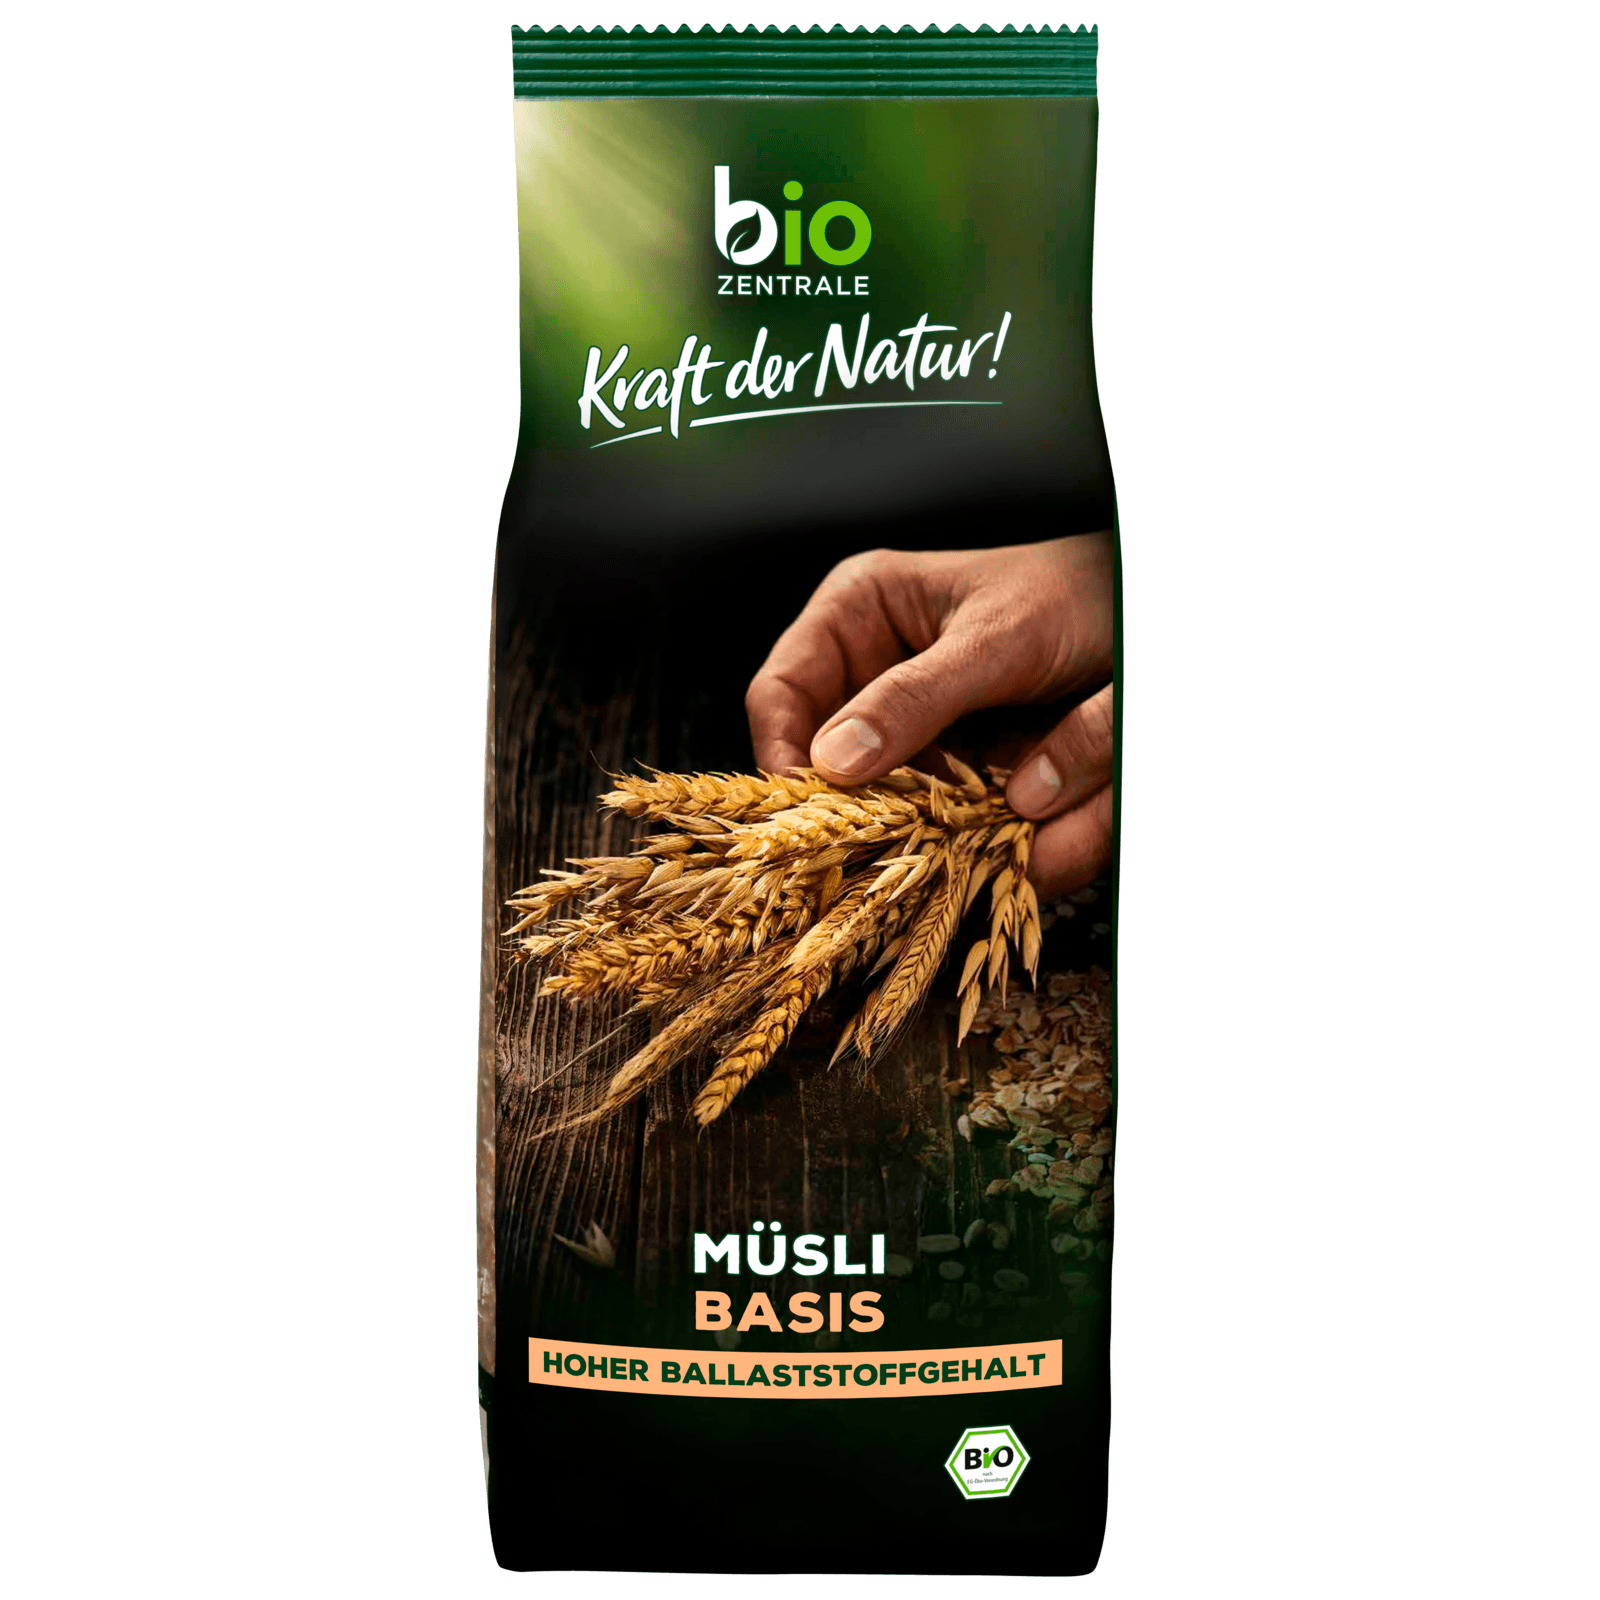 Biozentrale Bio Basis-Müsli 750g  für 3.49 EUR